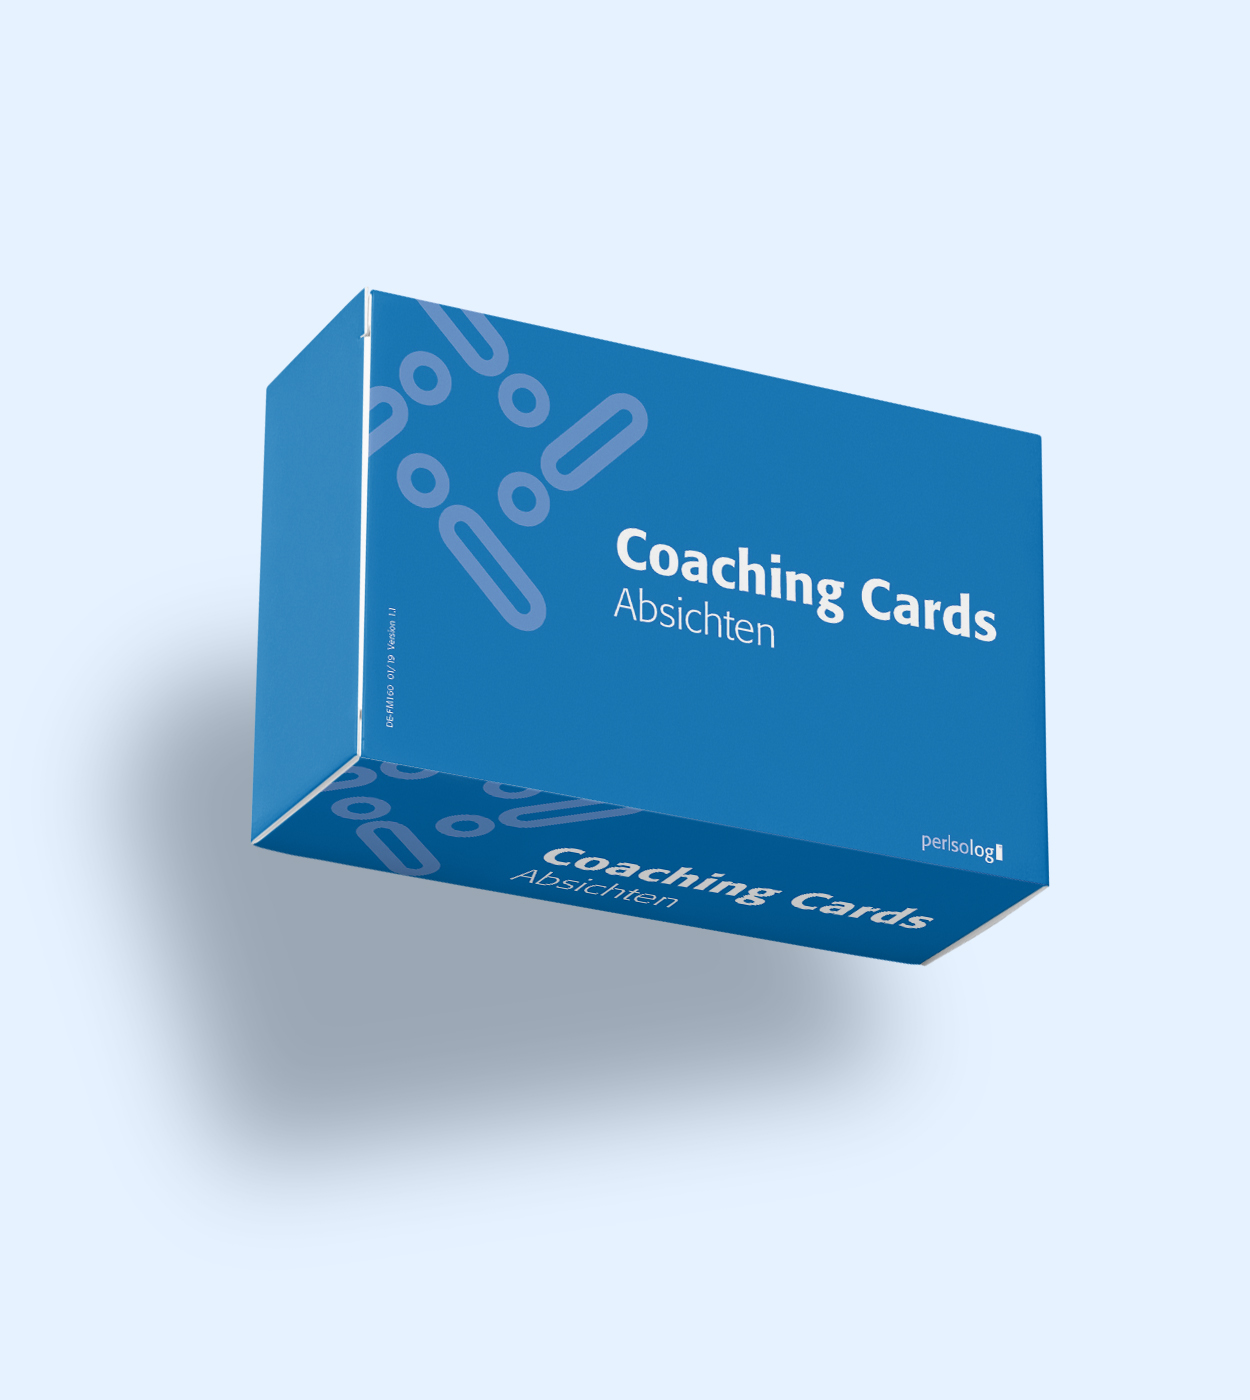 Coaching Cards Absichten